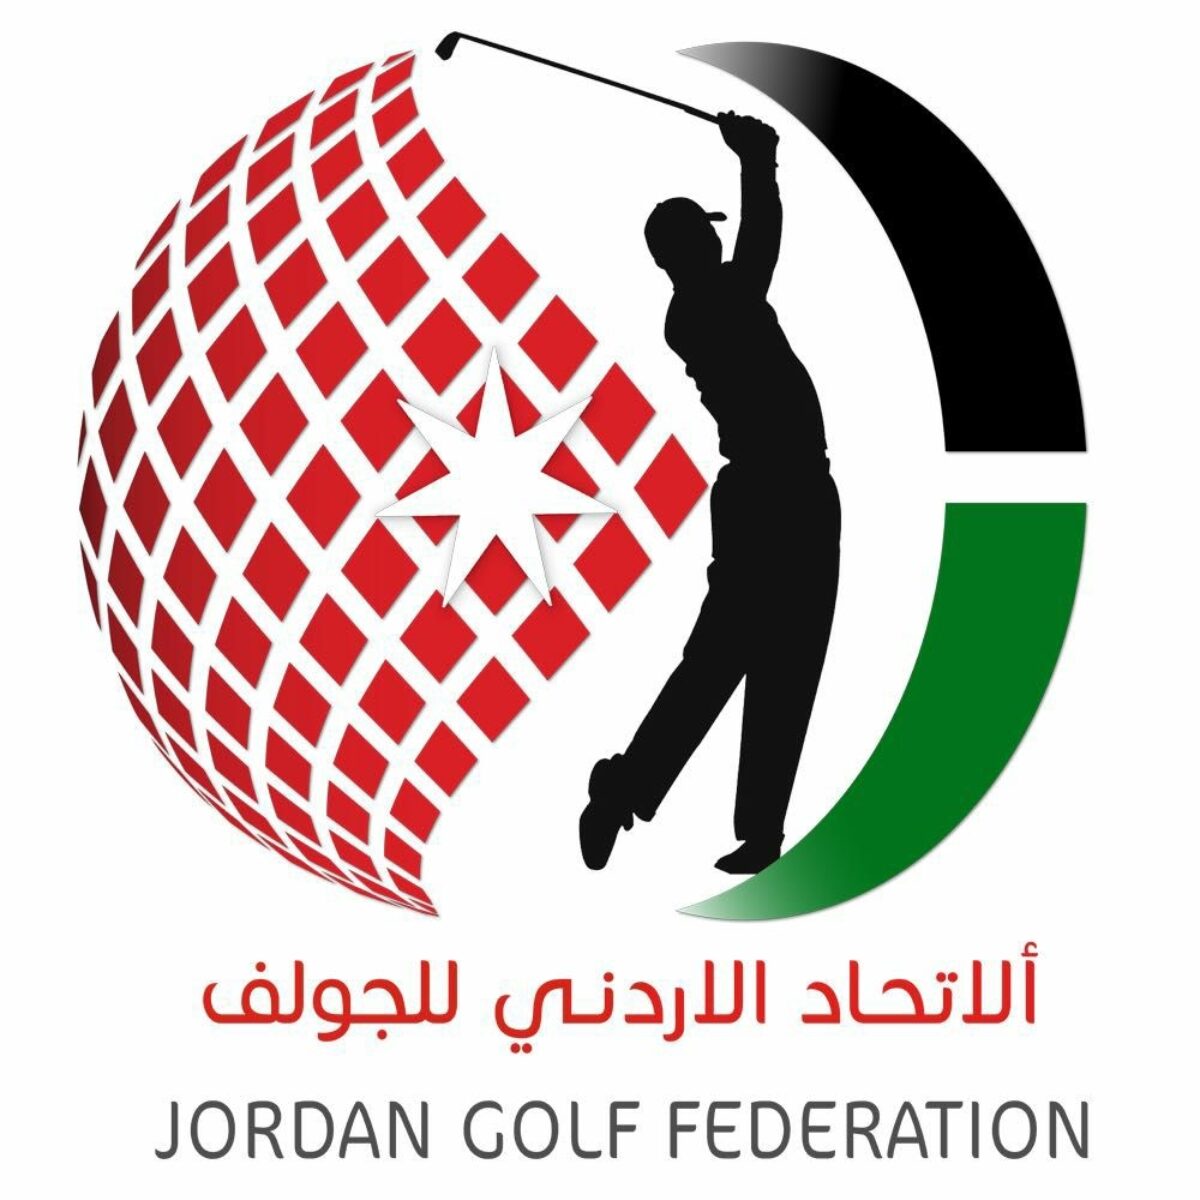 تجديد اتفاقية التعاون بين الاتحاد الأردني للجولف وأيلة لنشر وتطوير اللعبة